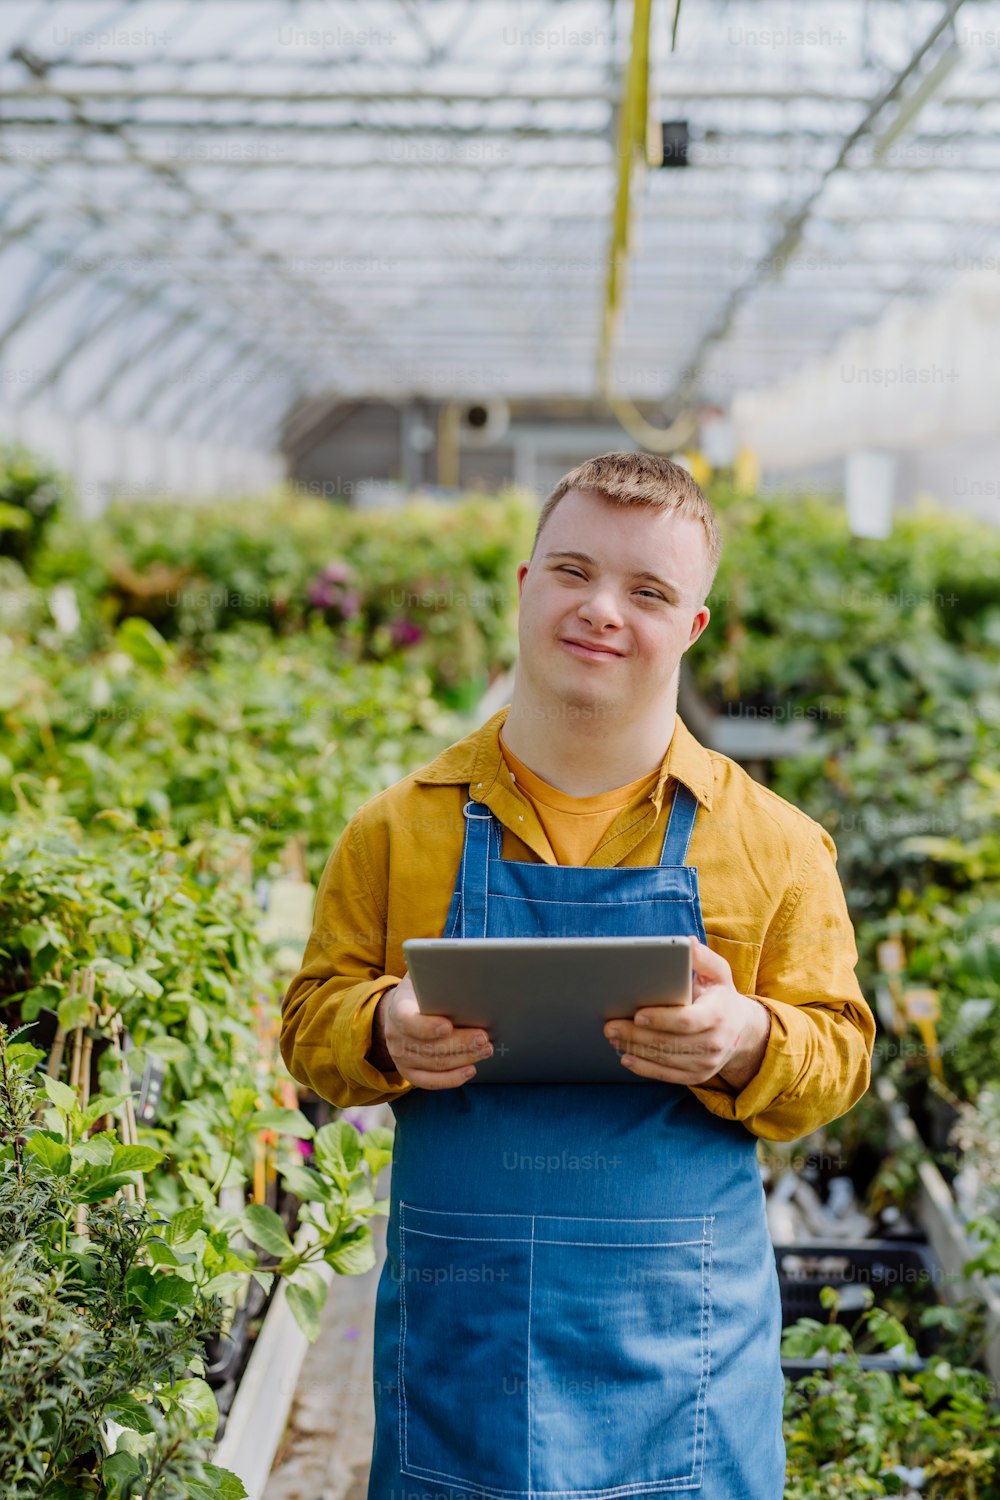 Un giovane con la sindrome di Down che lavora in un centro di giardinaggio, raccogliendo appunti e controllando le piante.